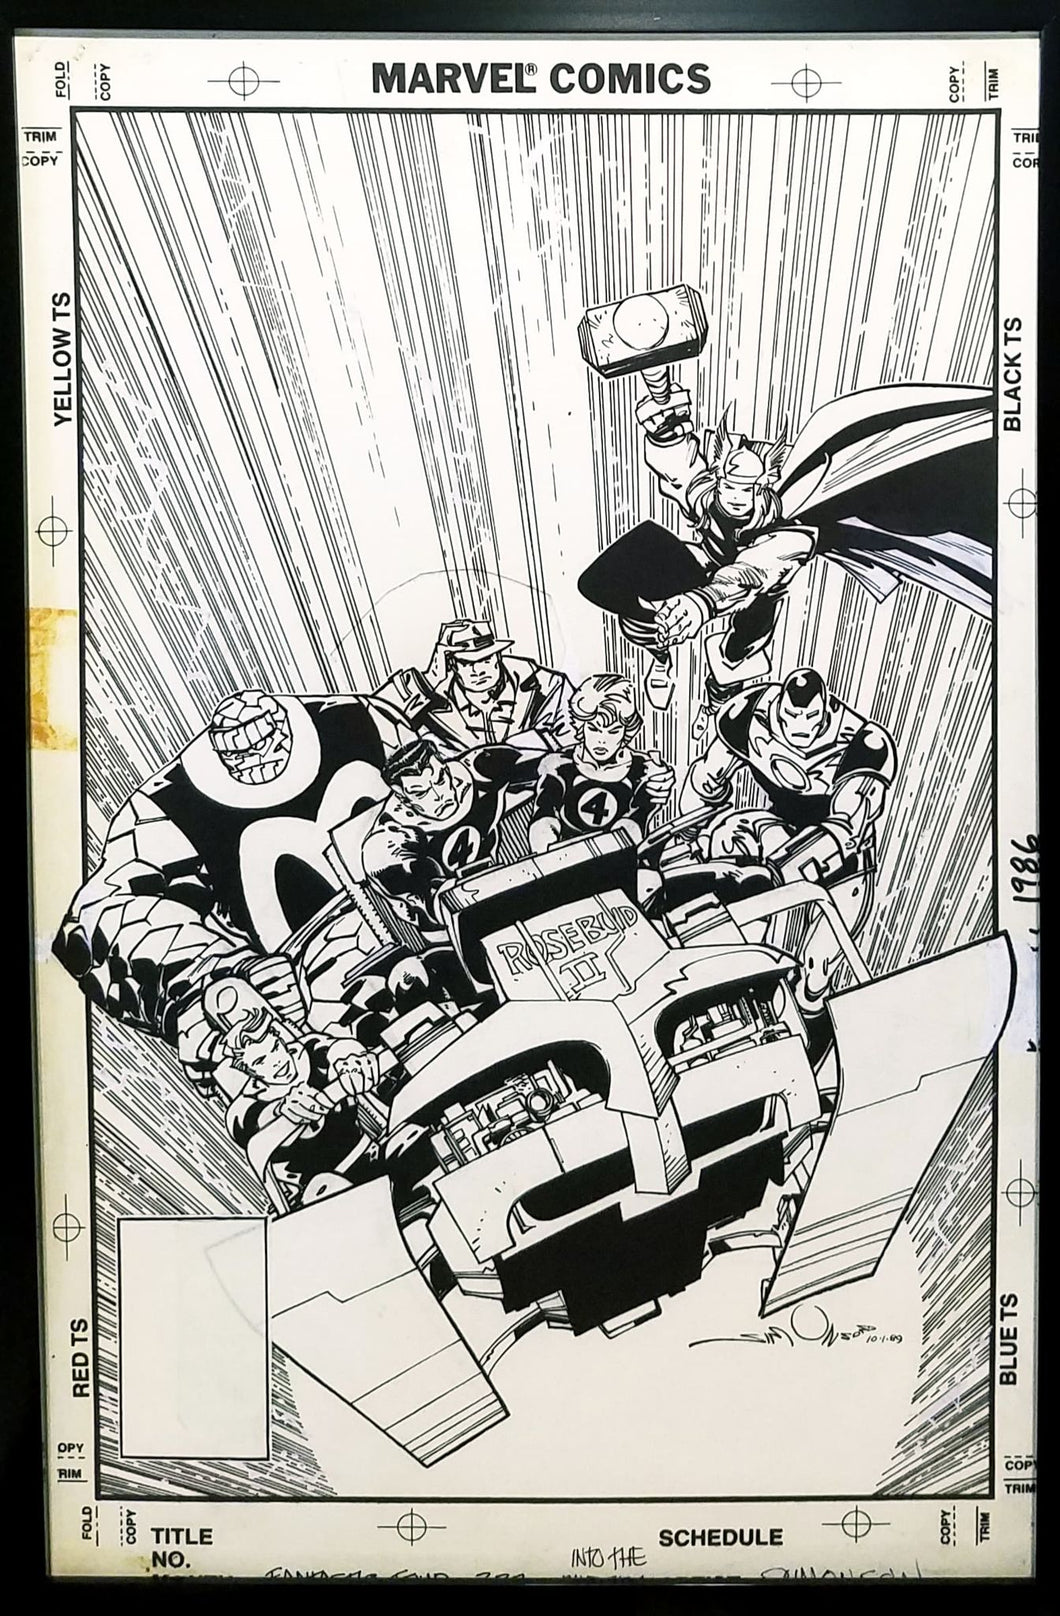 Fantastic Four #337 by Walt Simonson 11x17 FRAMED Original Art Poster Marvel Comics